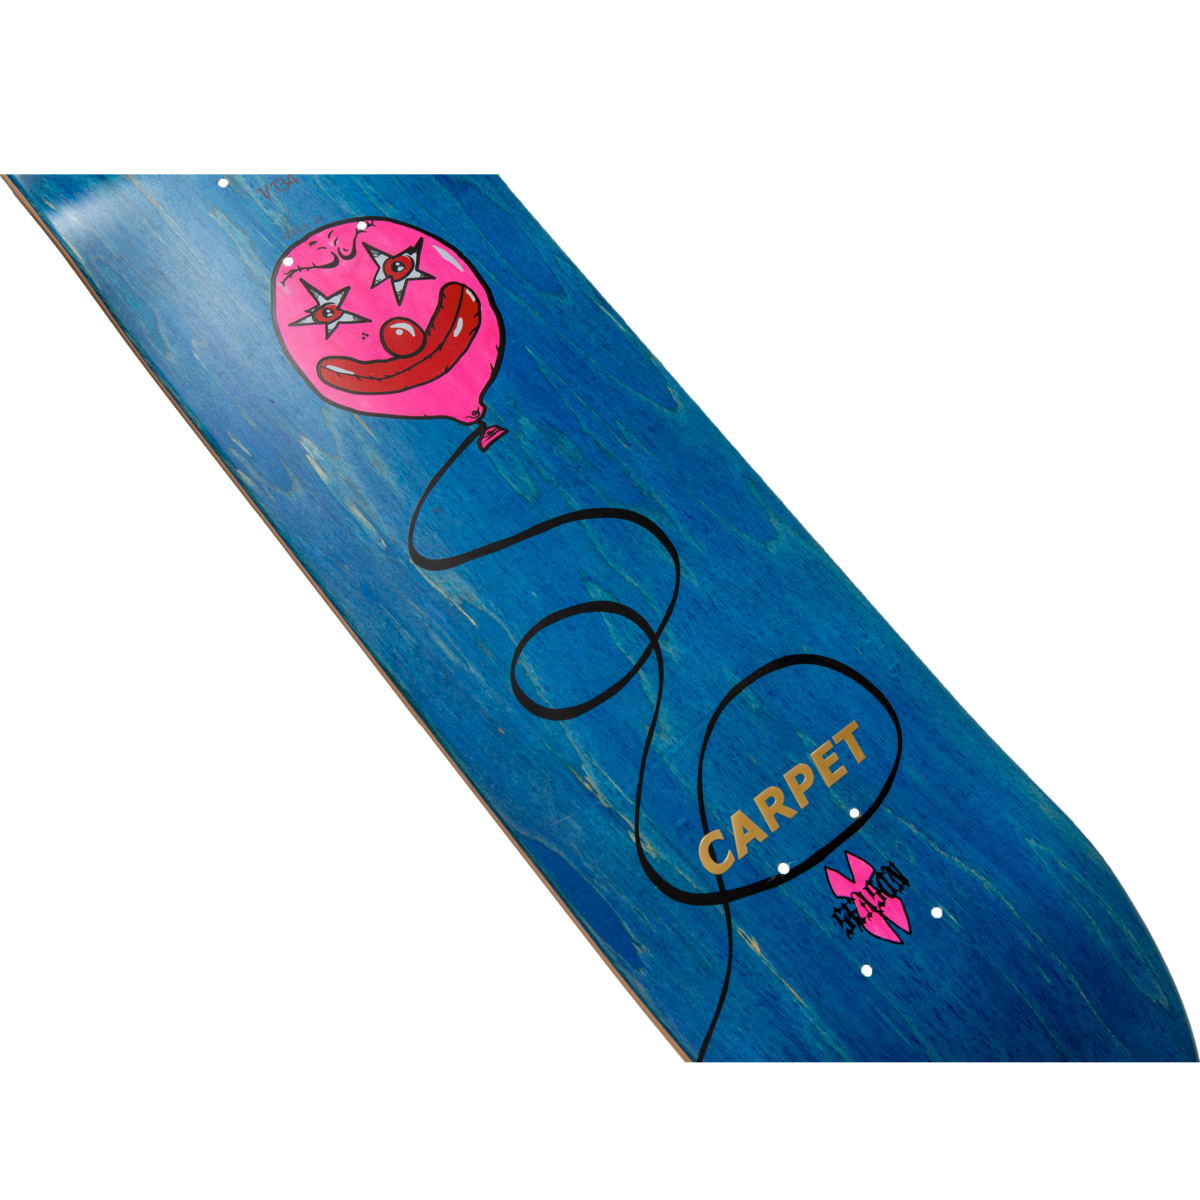 CARPET skateboard デッキ